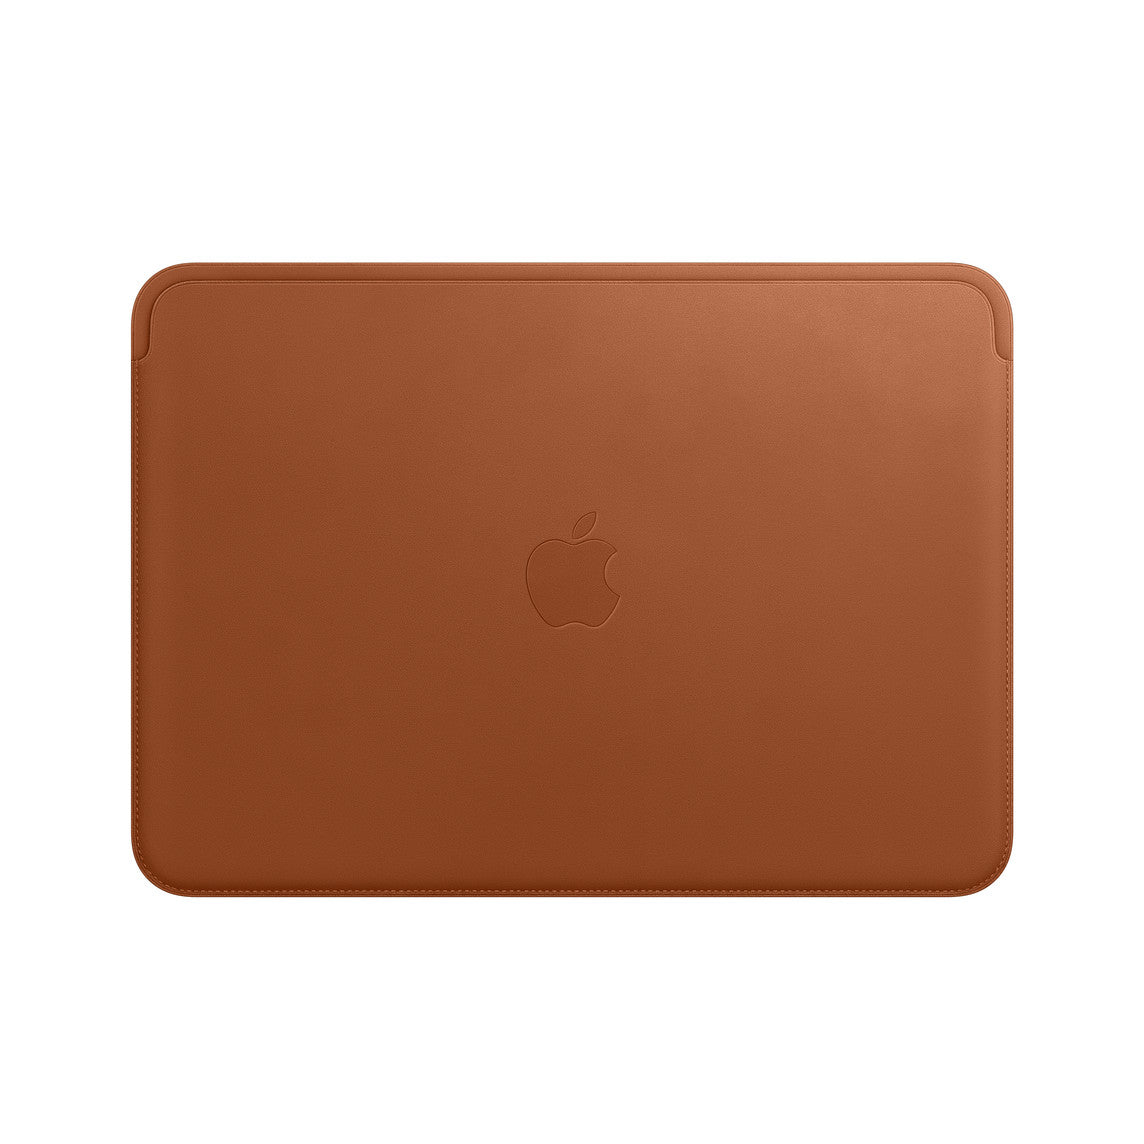 Funda de piel para el MacBook de 12 pulgadas - Marrón caramelo